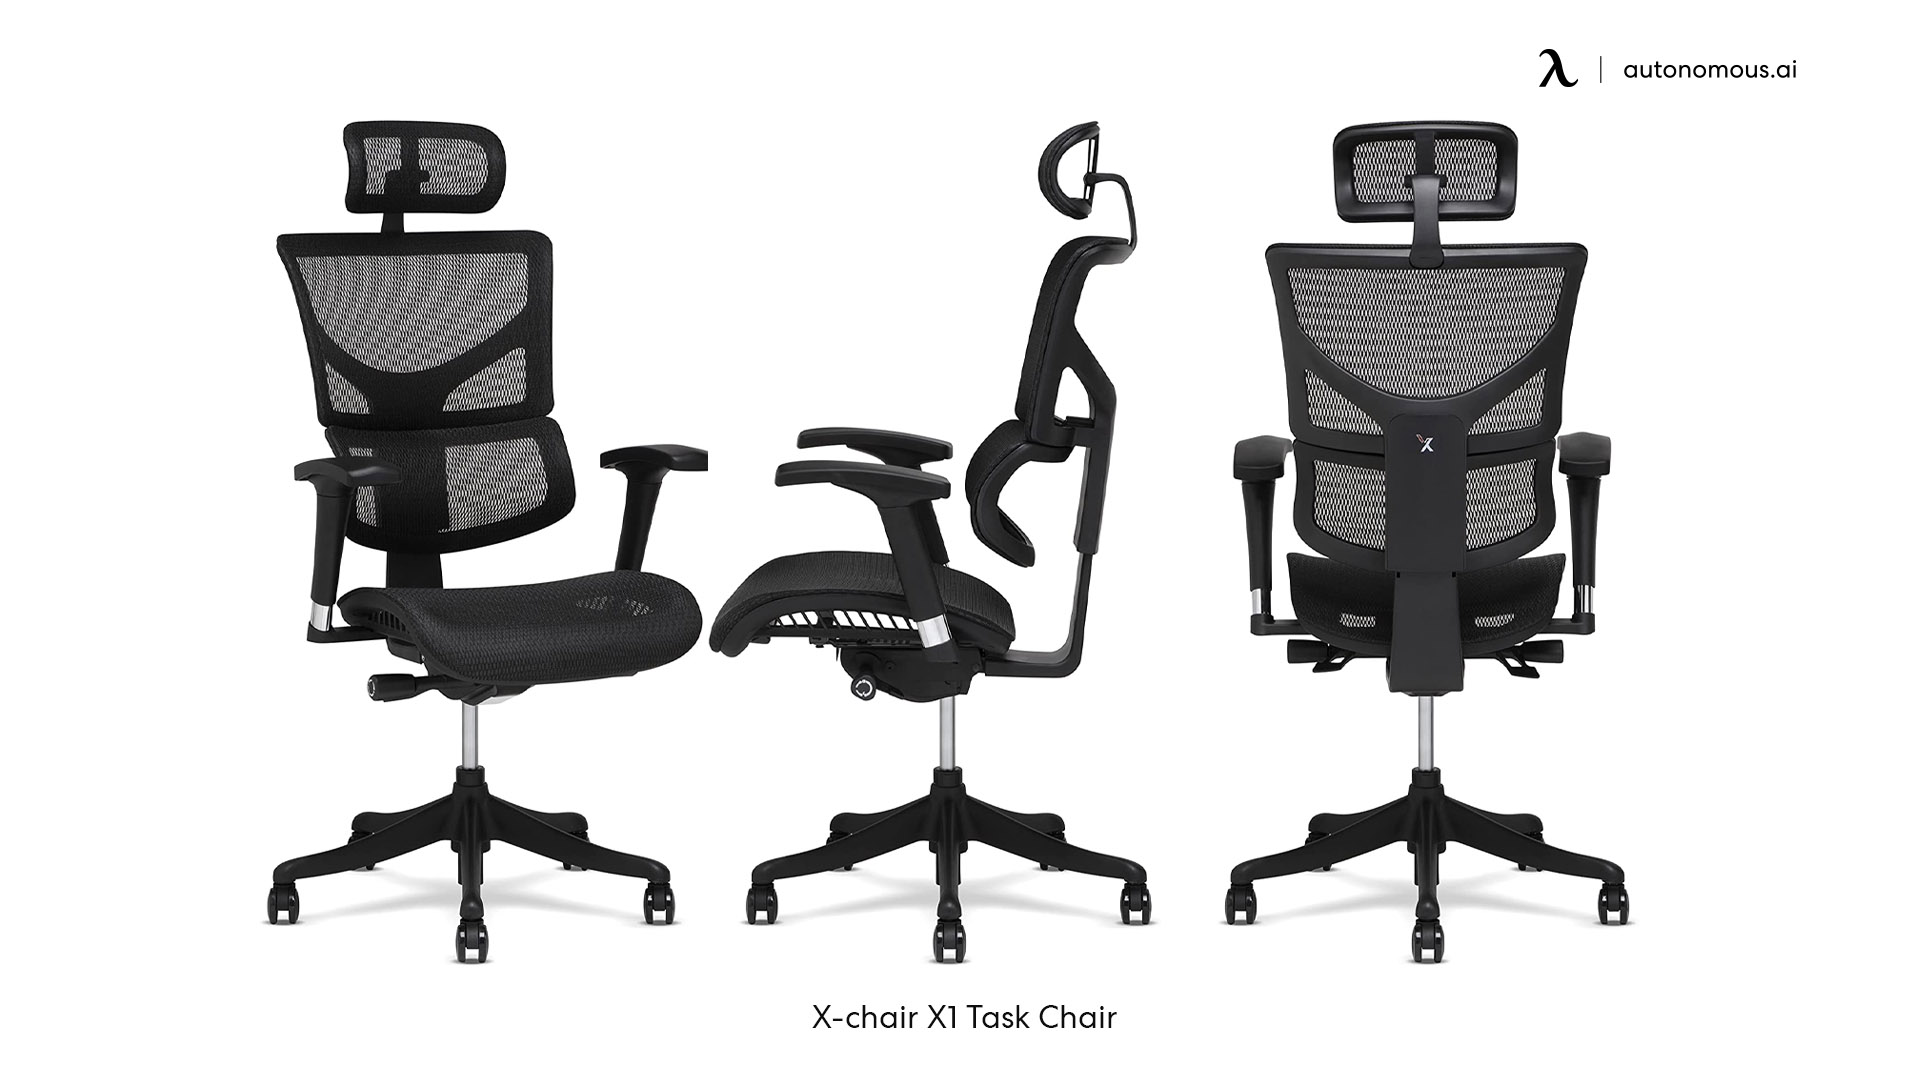 X-chair X1 Task Chair